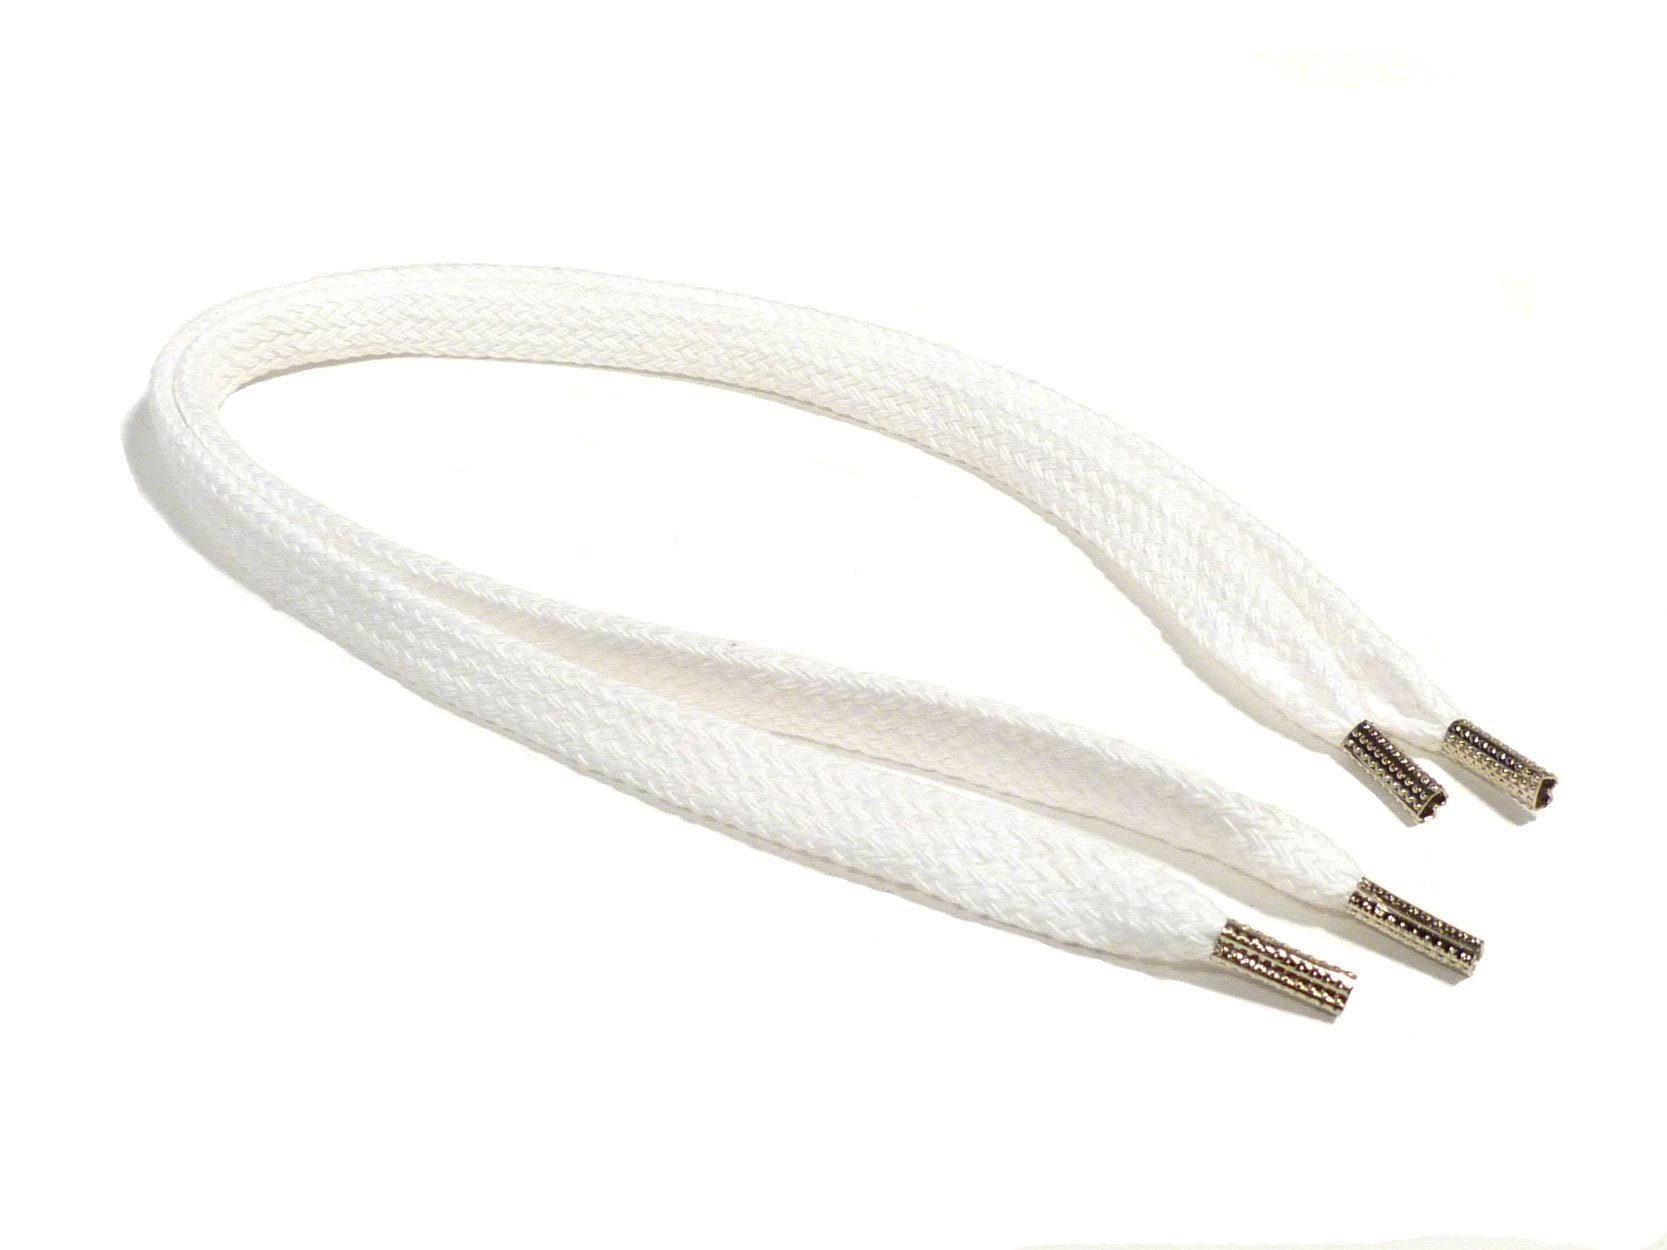 Rema Schnürsenkel Rema Schnürsenkel Weiß - flach - ca. 8-10 mm breit für Sie nach Wunschlänge geschnitten und mit Metallenden versehen